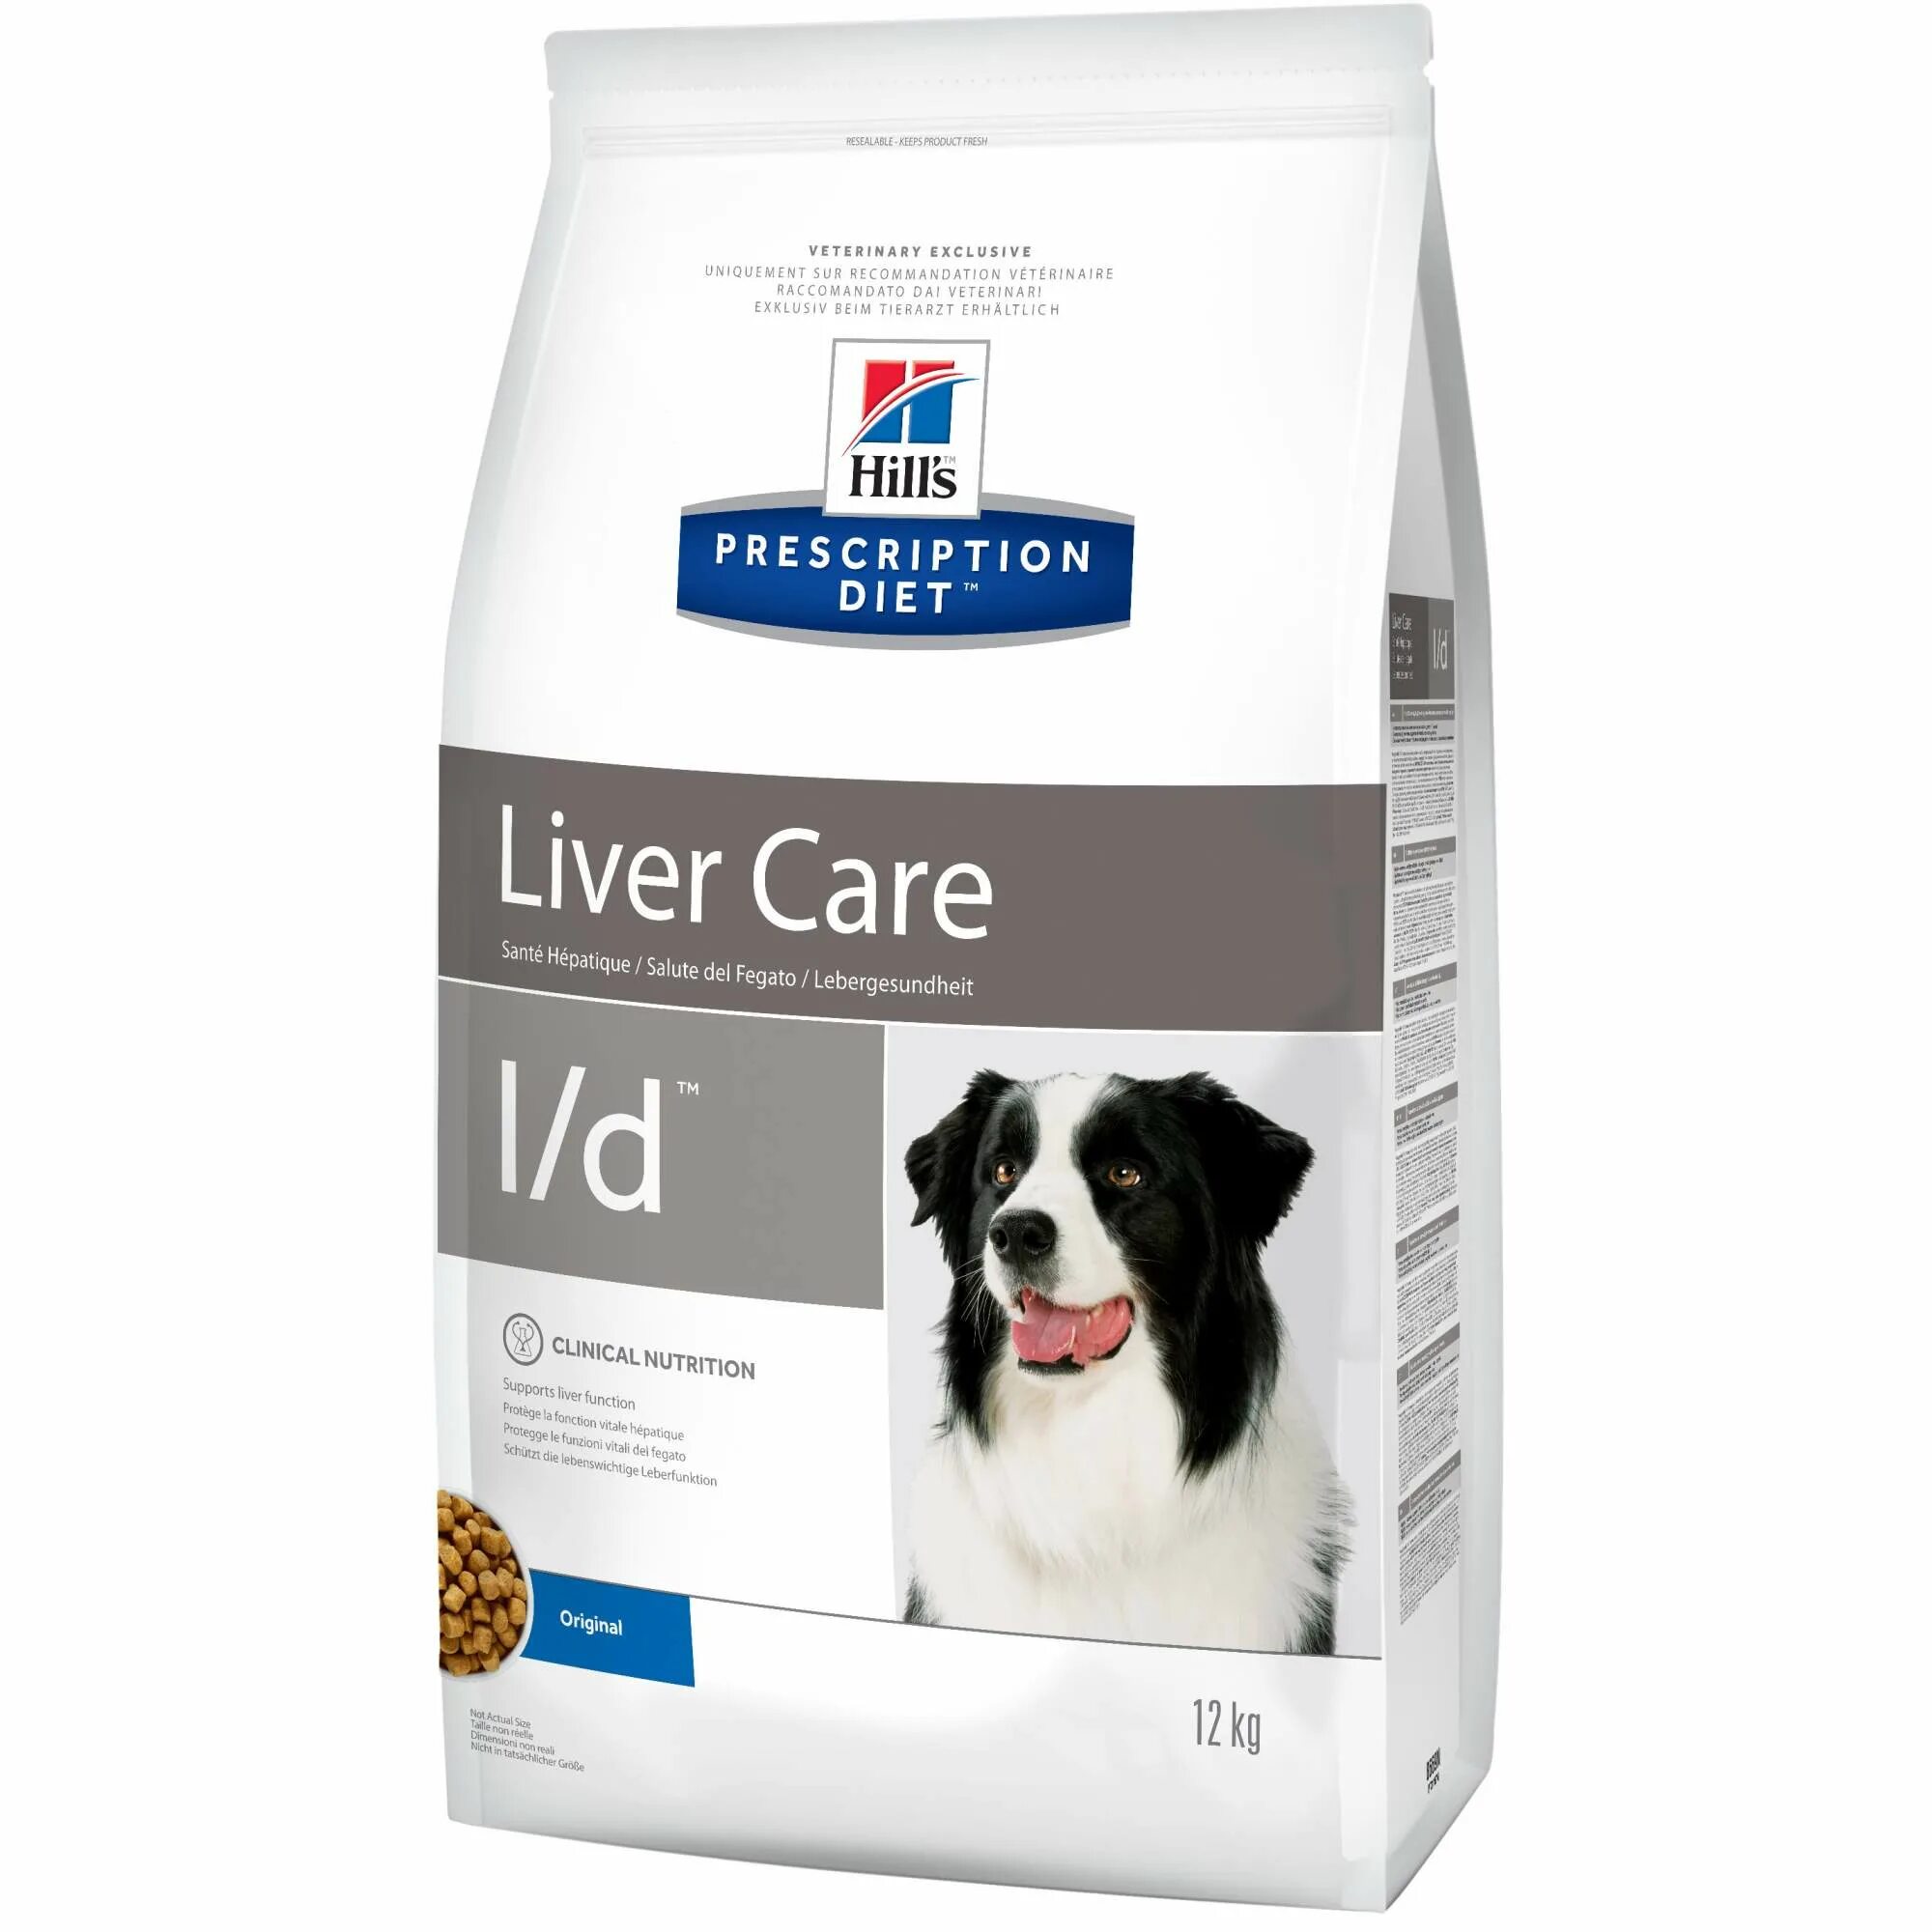 Hill's Prescription Diet l/d canine. Hill's Prescription Diet для собак. Liver Care l/d для собак. Hills u/d canine для собак. Hill s prescription diet s d urinary